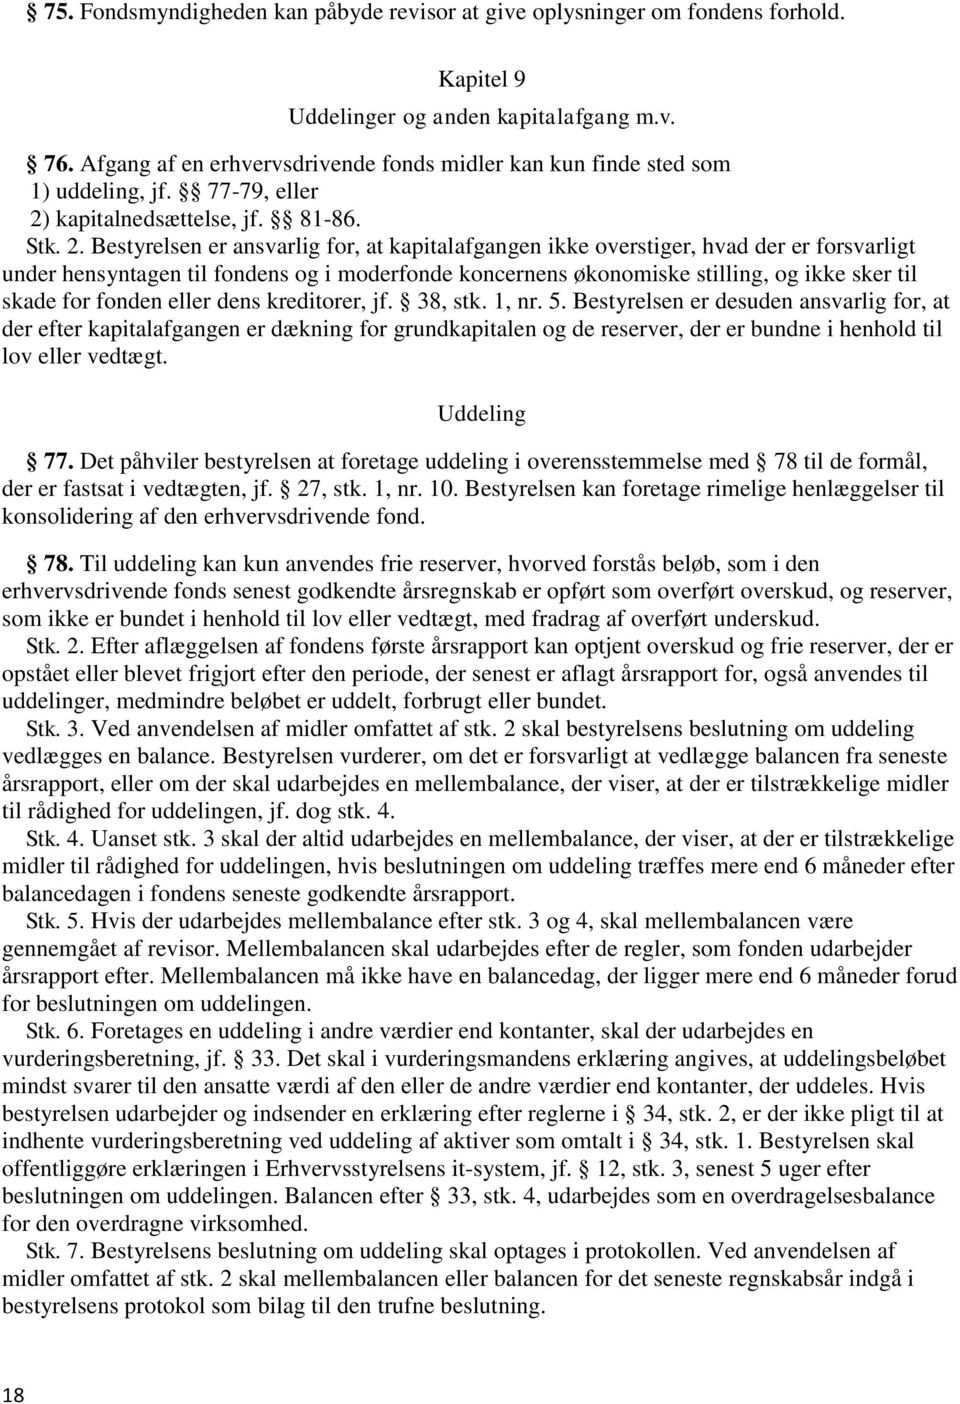 kapitalnedsættelse, jf. 81-86. Stk. 2.